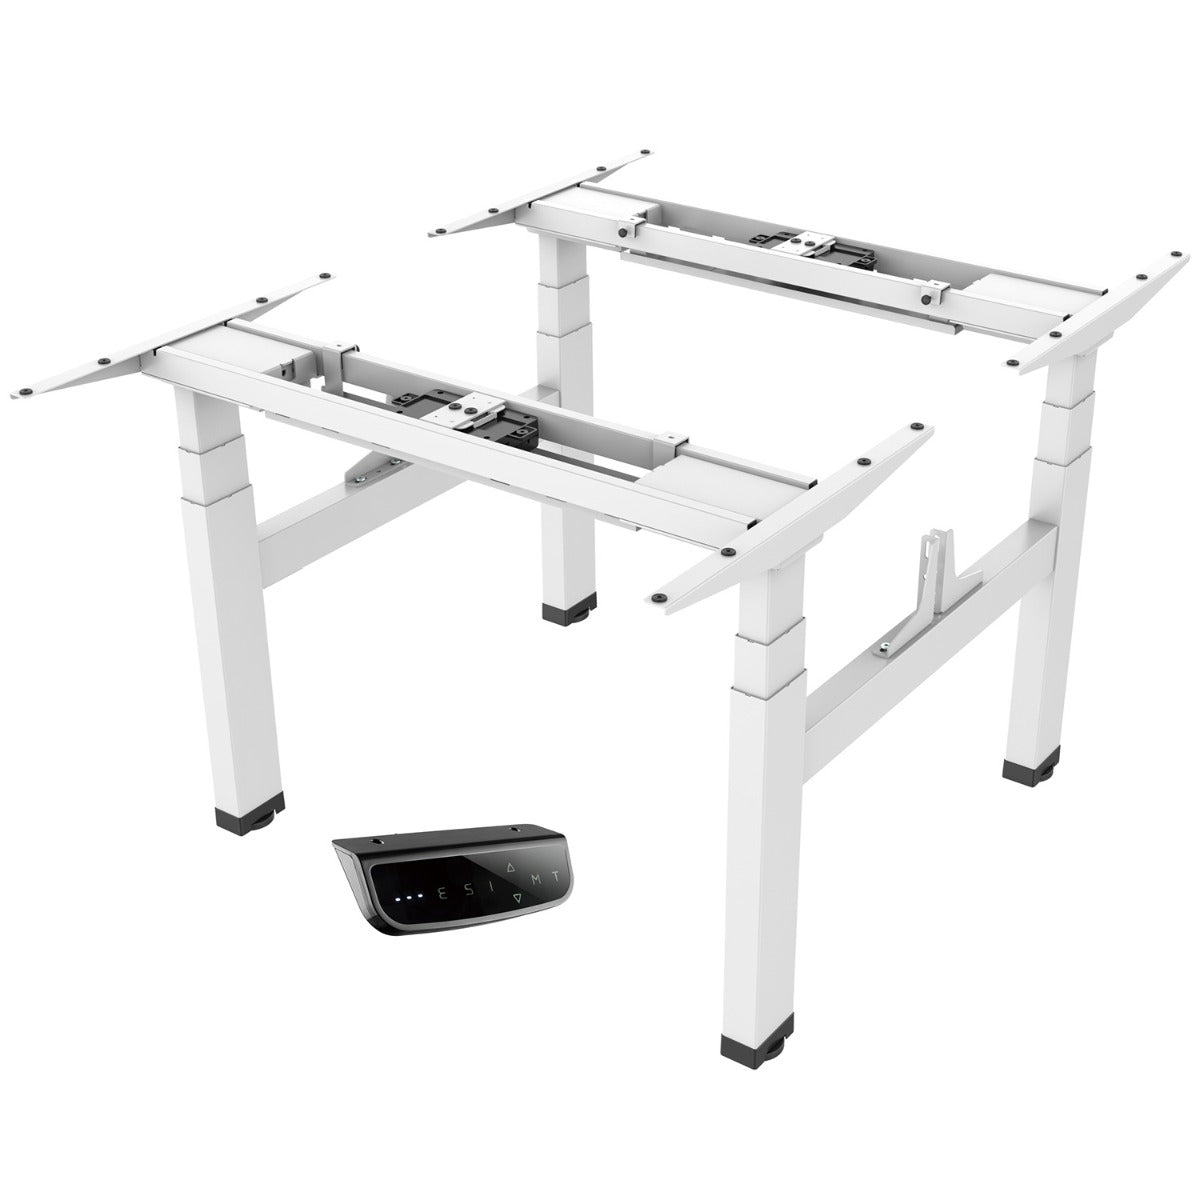 Order Office Furniture Quad Motor Electric Back to Back Desk Frame Only - Black, Silver or White Option - OOF14